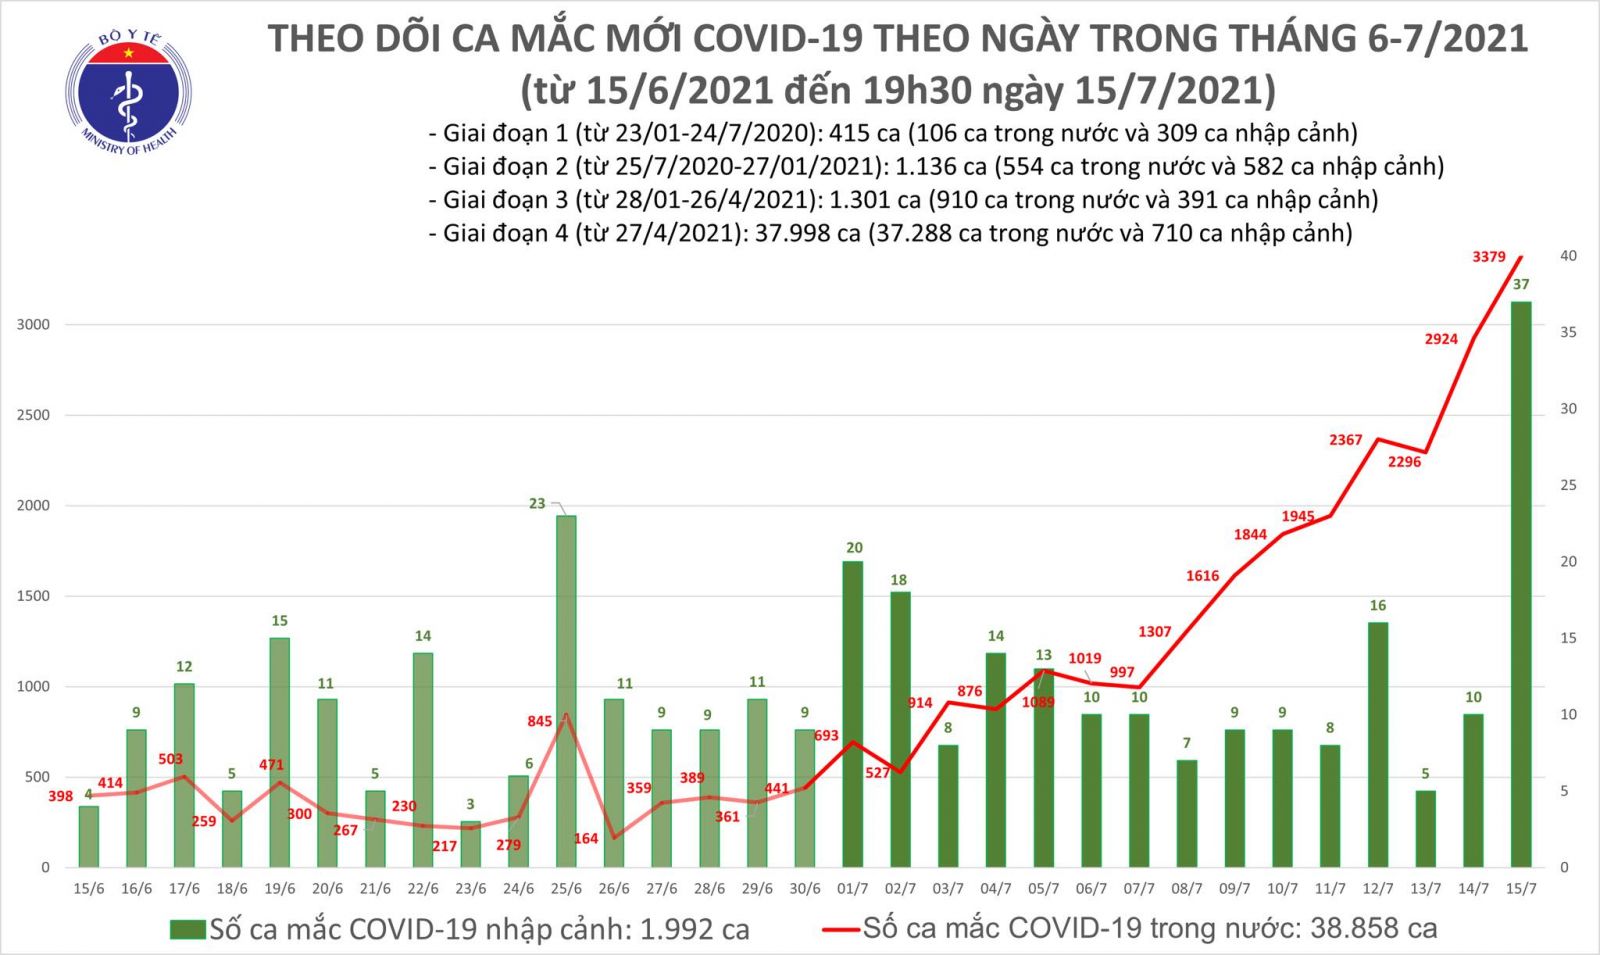 Tối 15/7: Thêm 1.922 ca mắc COVID-19, nâng tổng số mắc trong ngày lên 3.416 ca